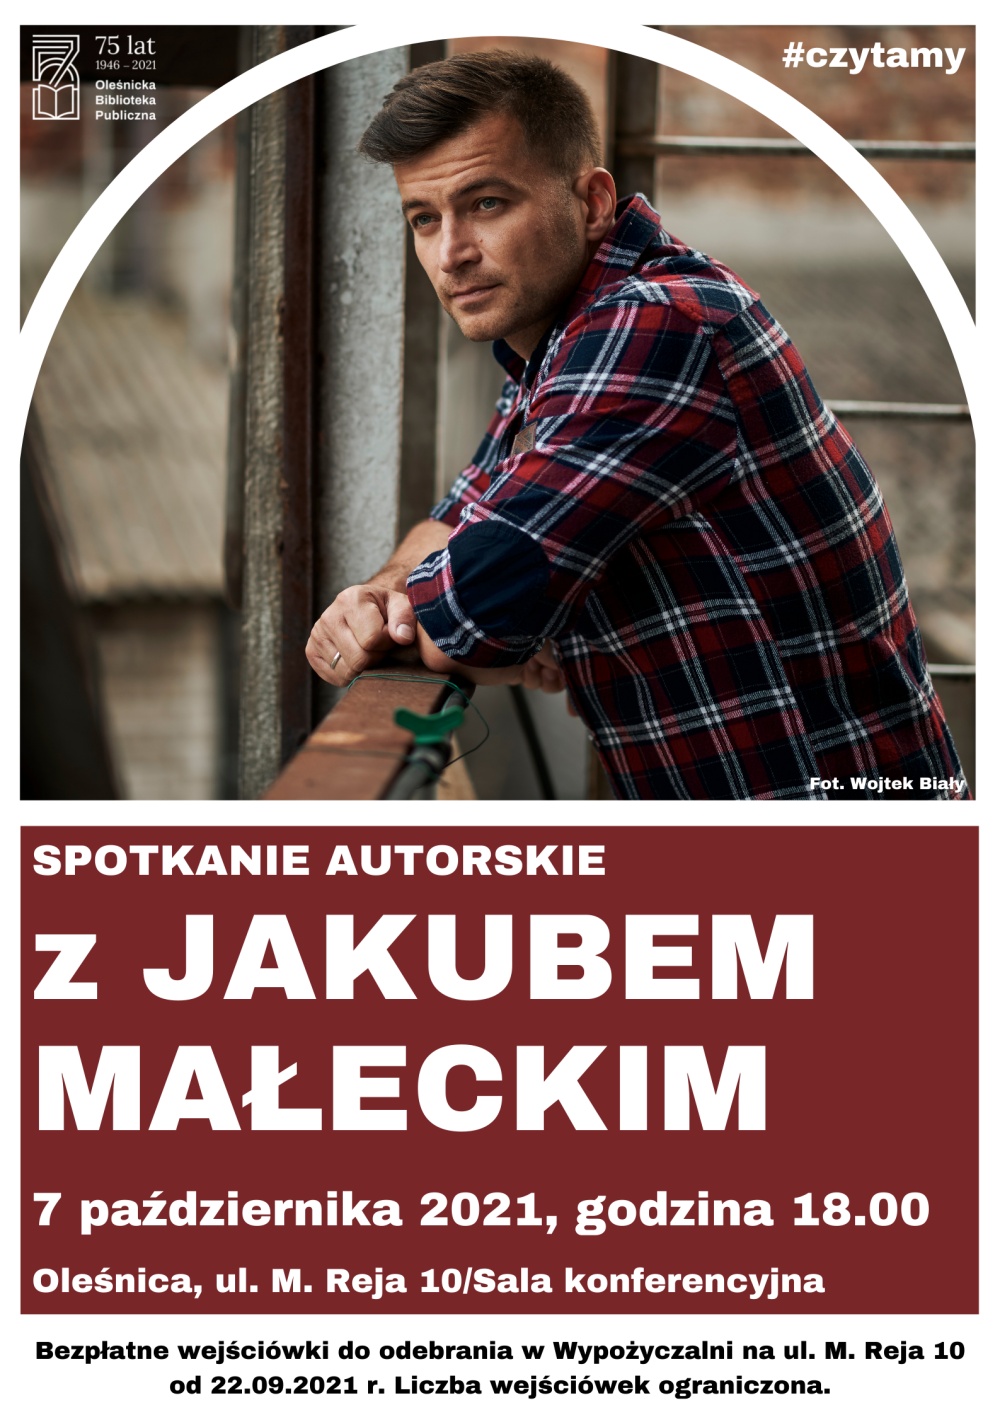 Plakat promujacy spotkanie autorskie z Jakubem Małeckim